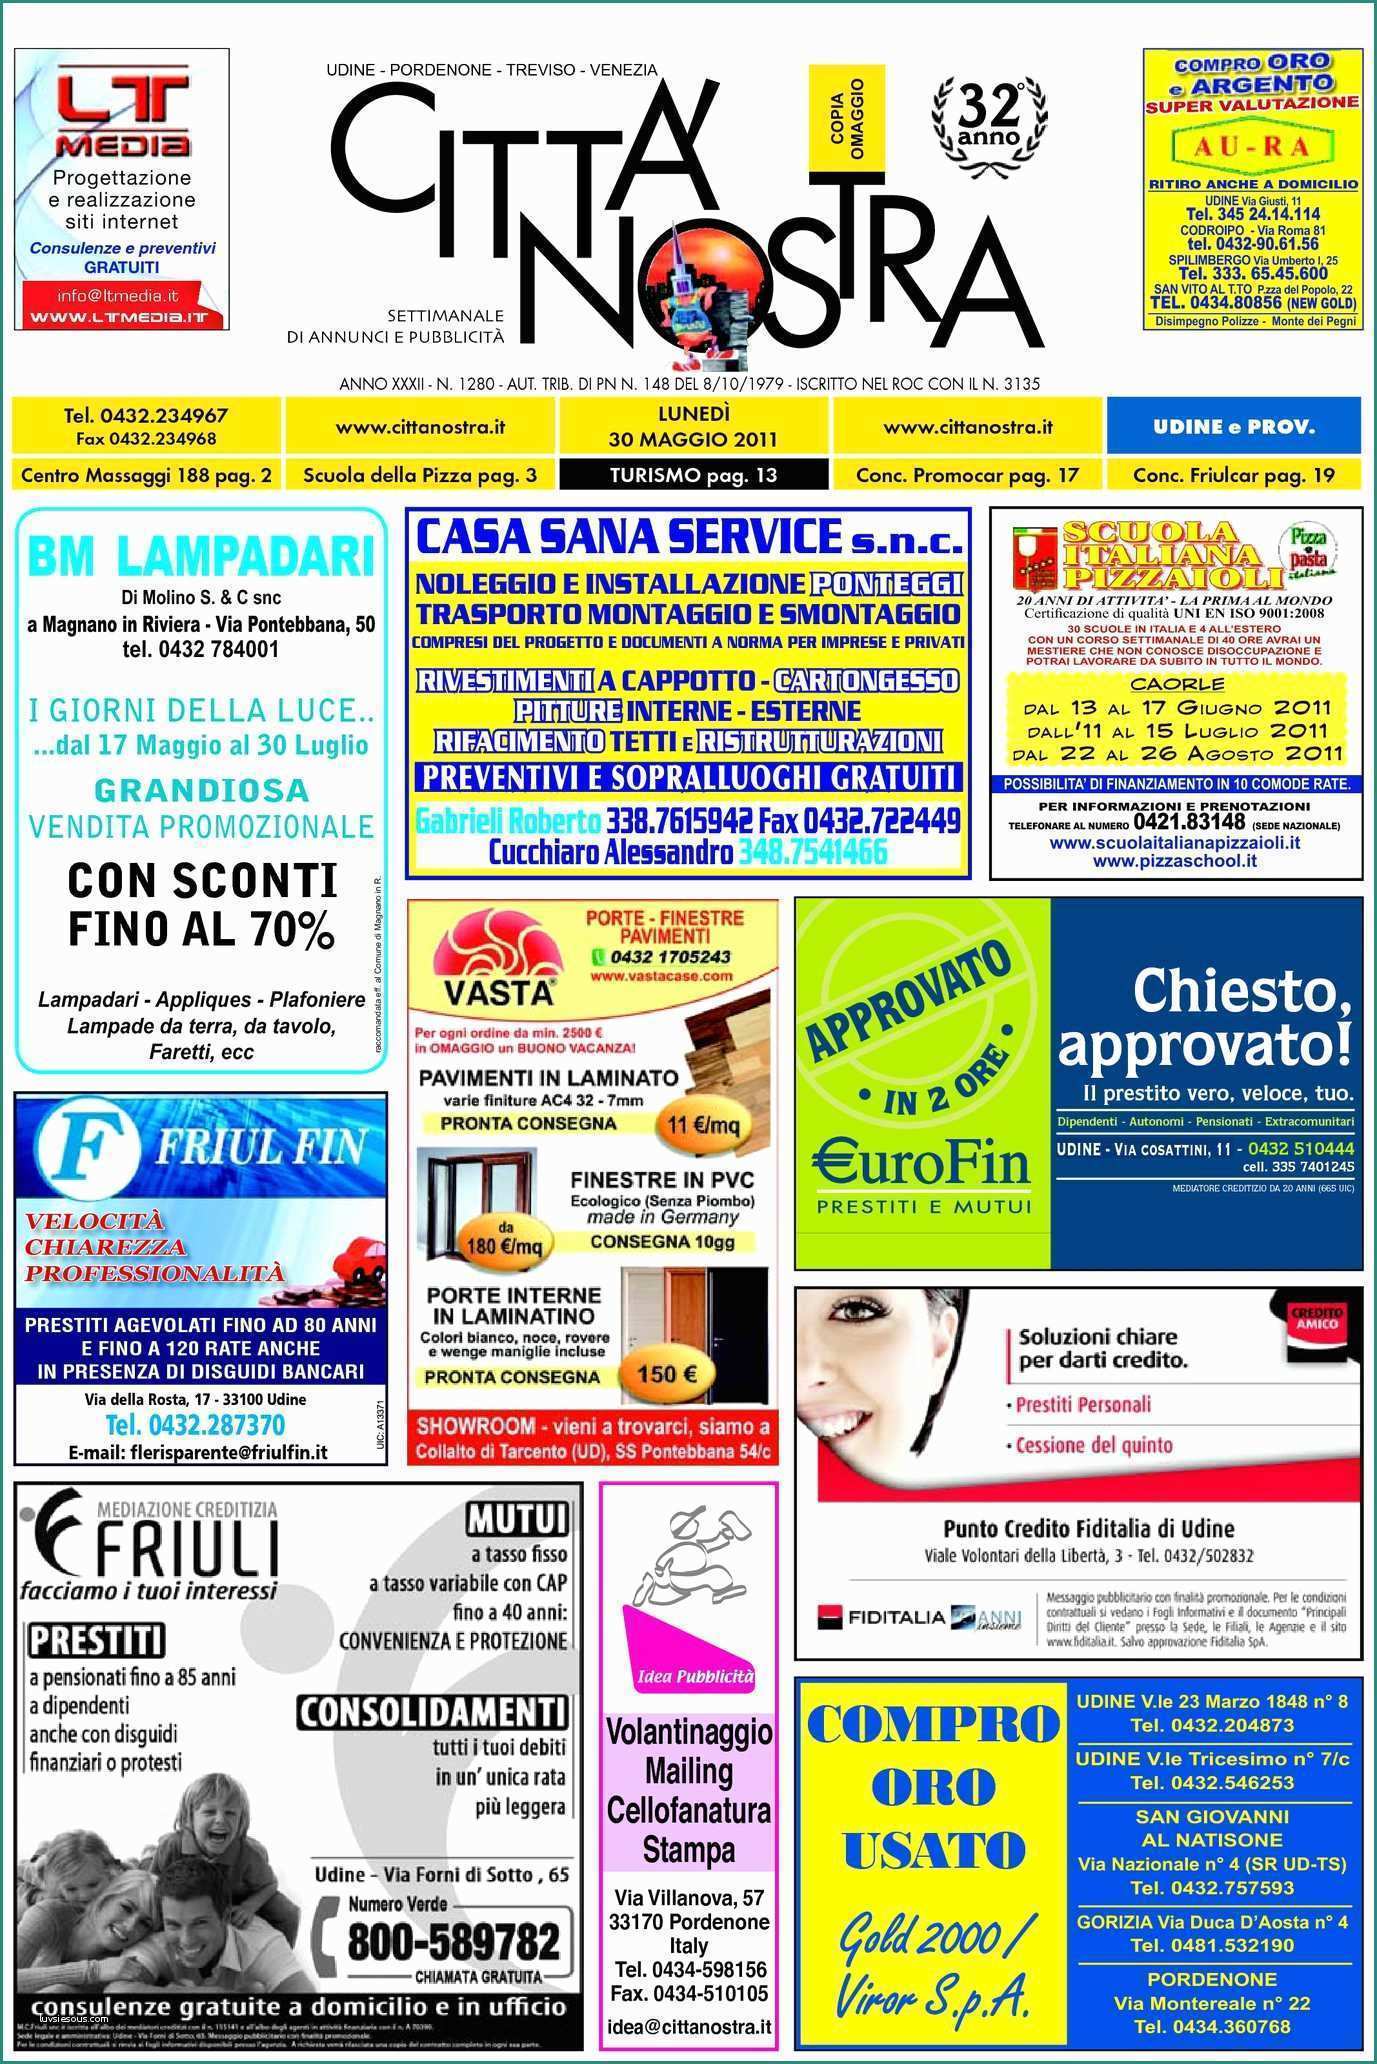 Lavatrice Indesit Non Parte E Calaméo Citt  Nostra Udine Del 30 05 2011 N 1280